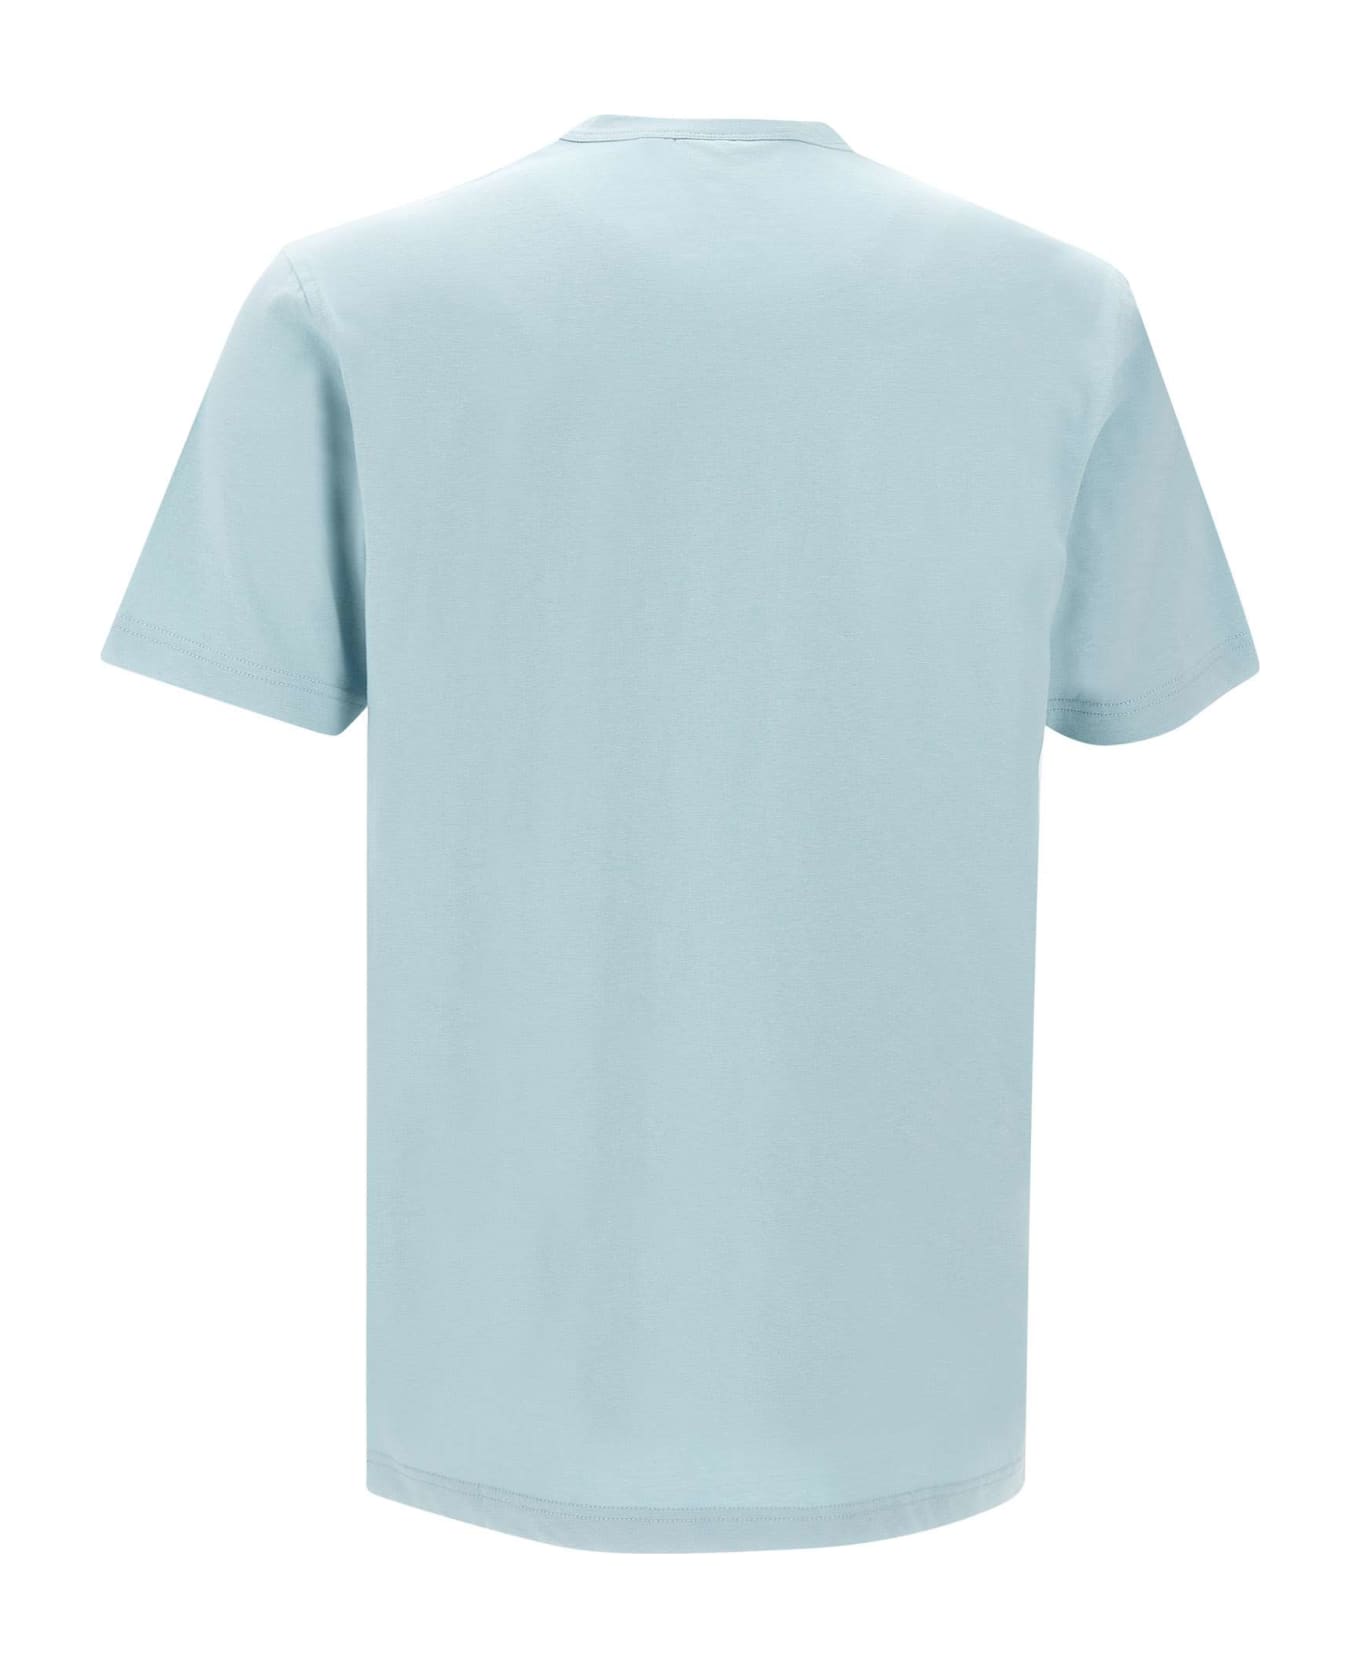 Belstaff Cotton T-shirt - LIGHT BLUE